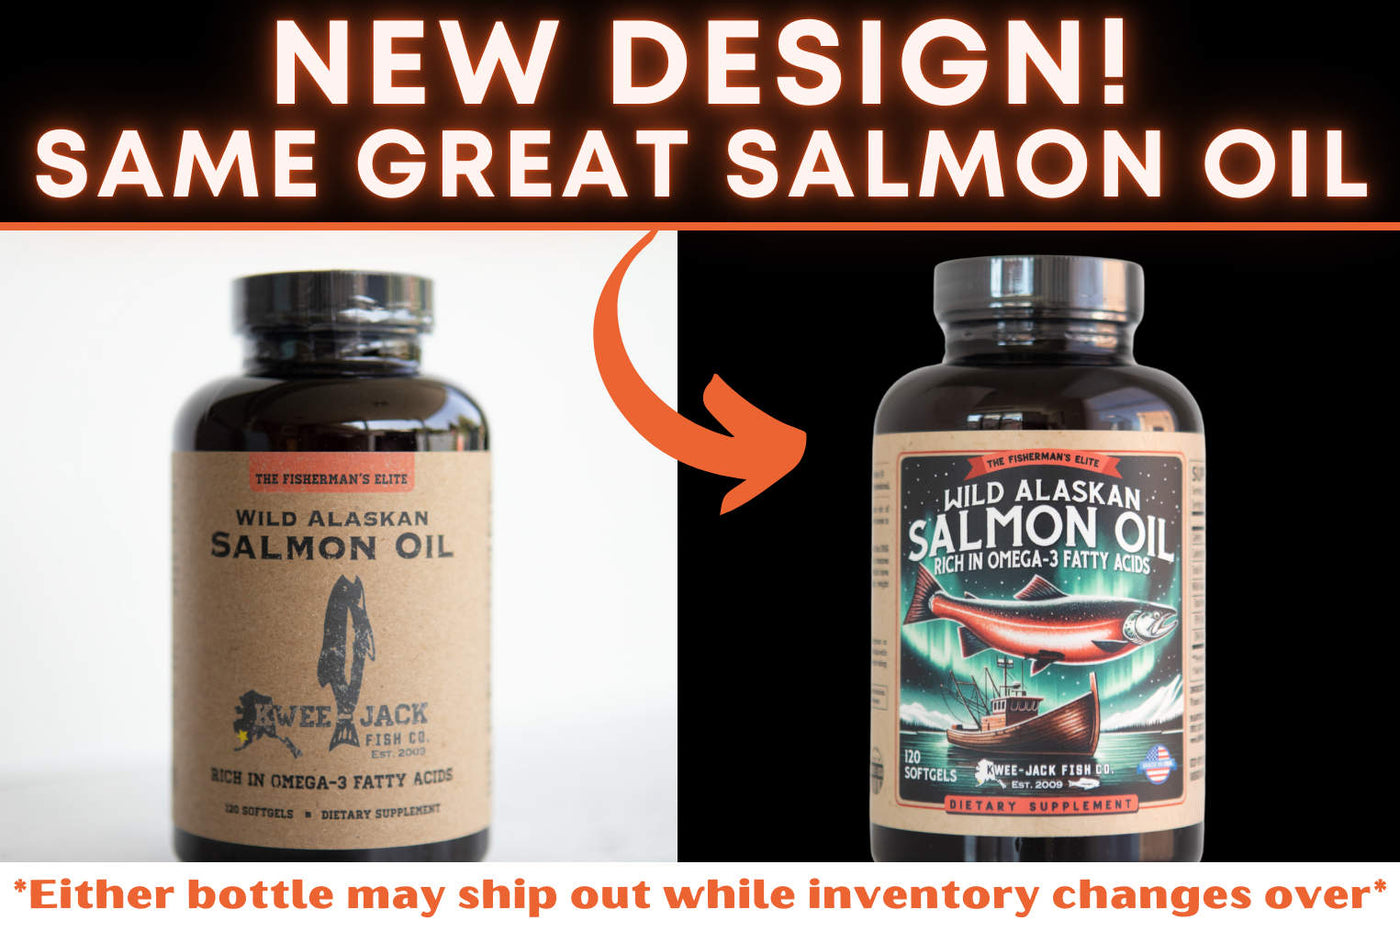 New bottle design for Kwee-Jack Fish Co.'s wild Alaskan salmon oil fish oil Omega 3 supplement.